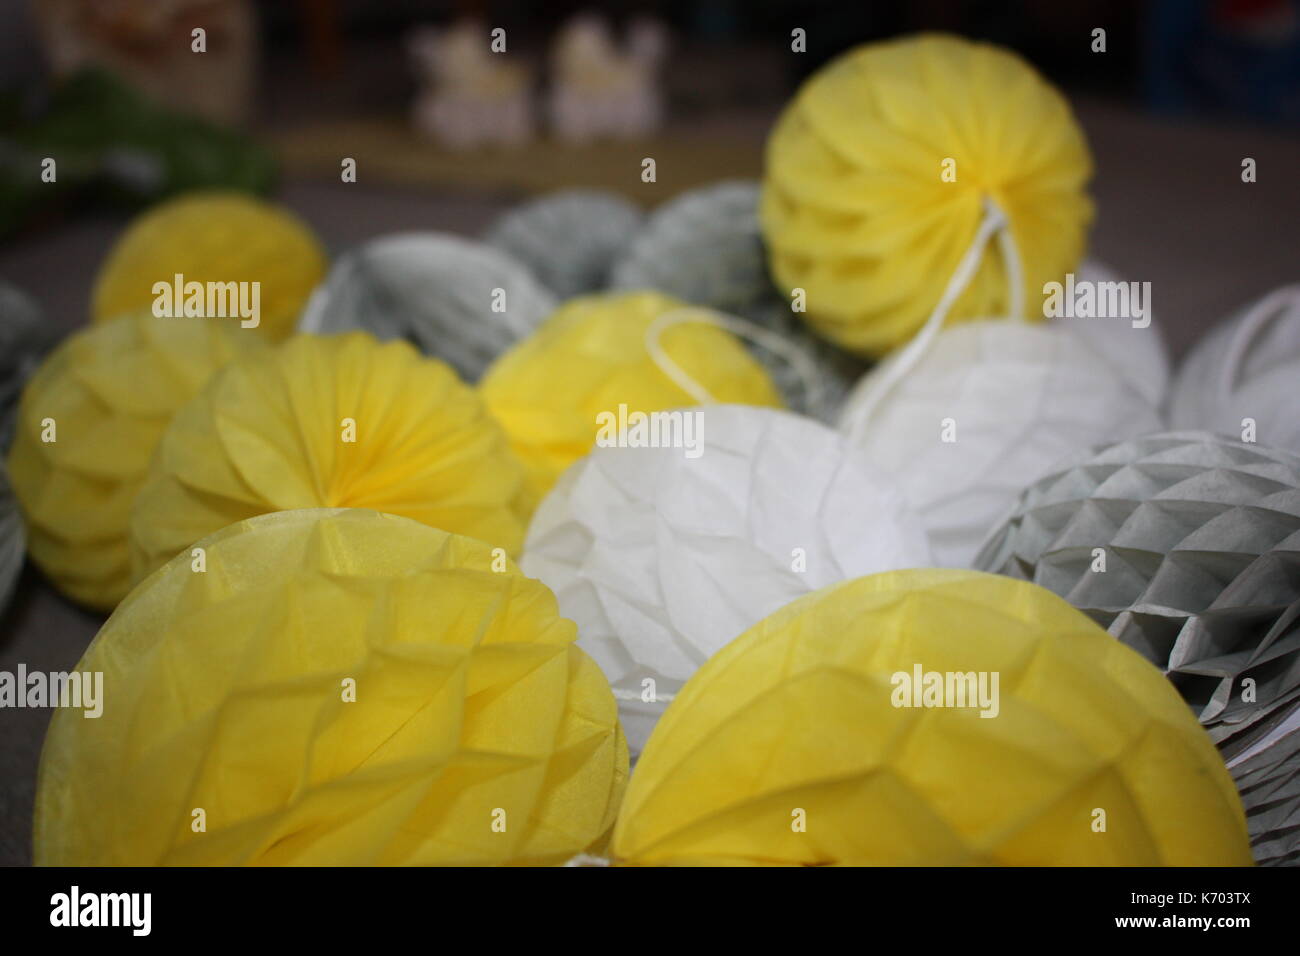 yellow, white, grey pom poms Stock Photo